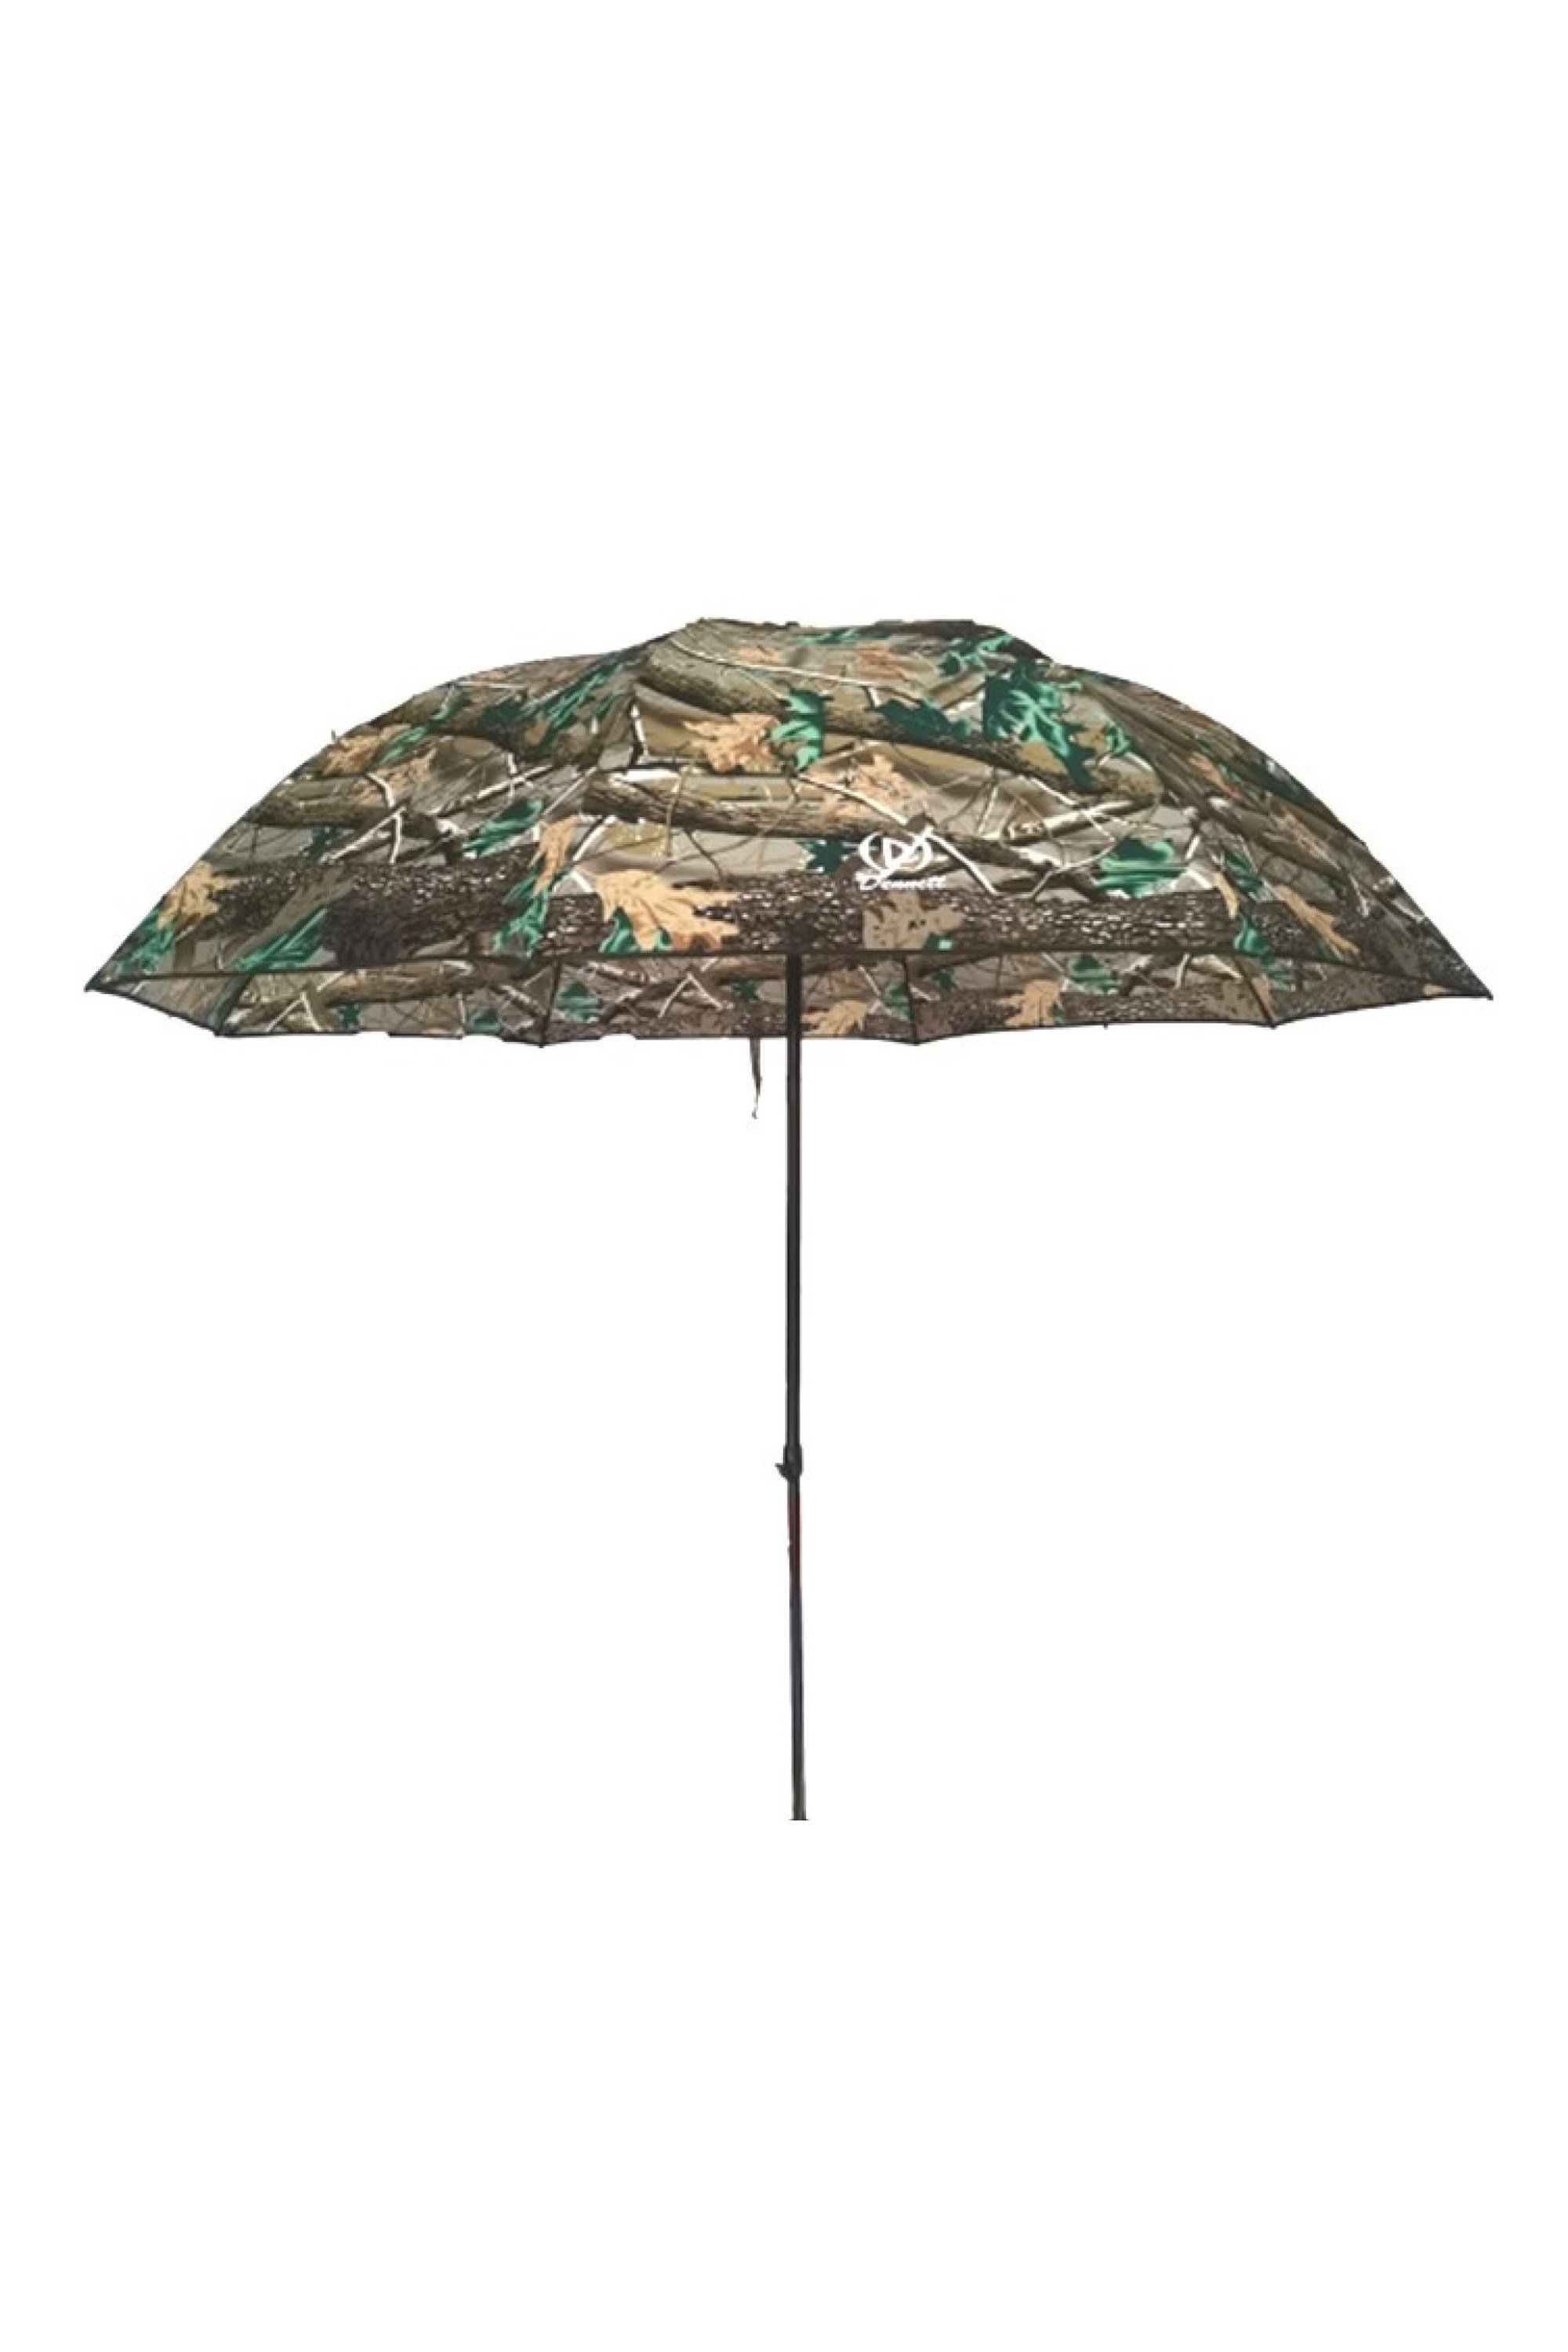 Dual Tilt Fishing Umbrella -